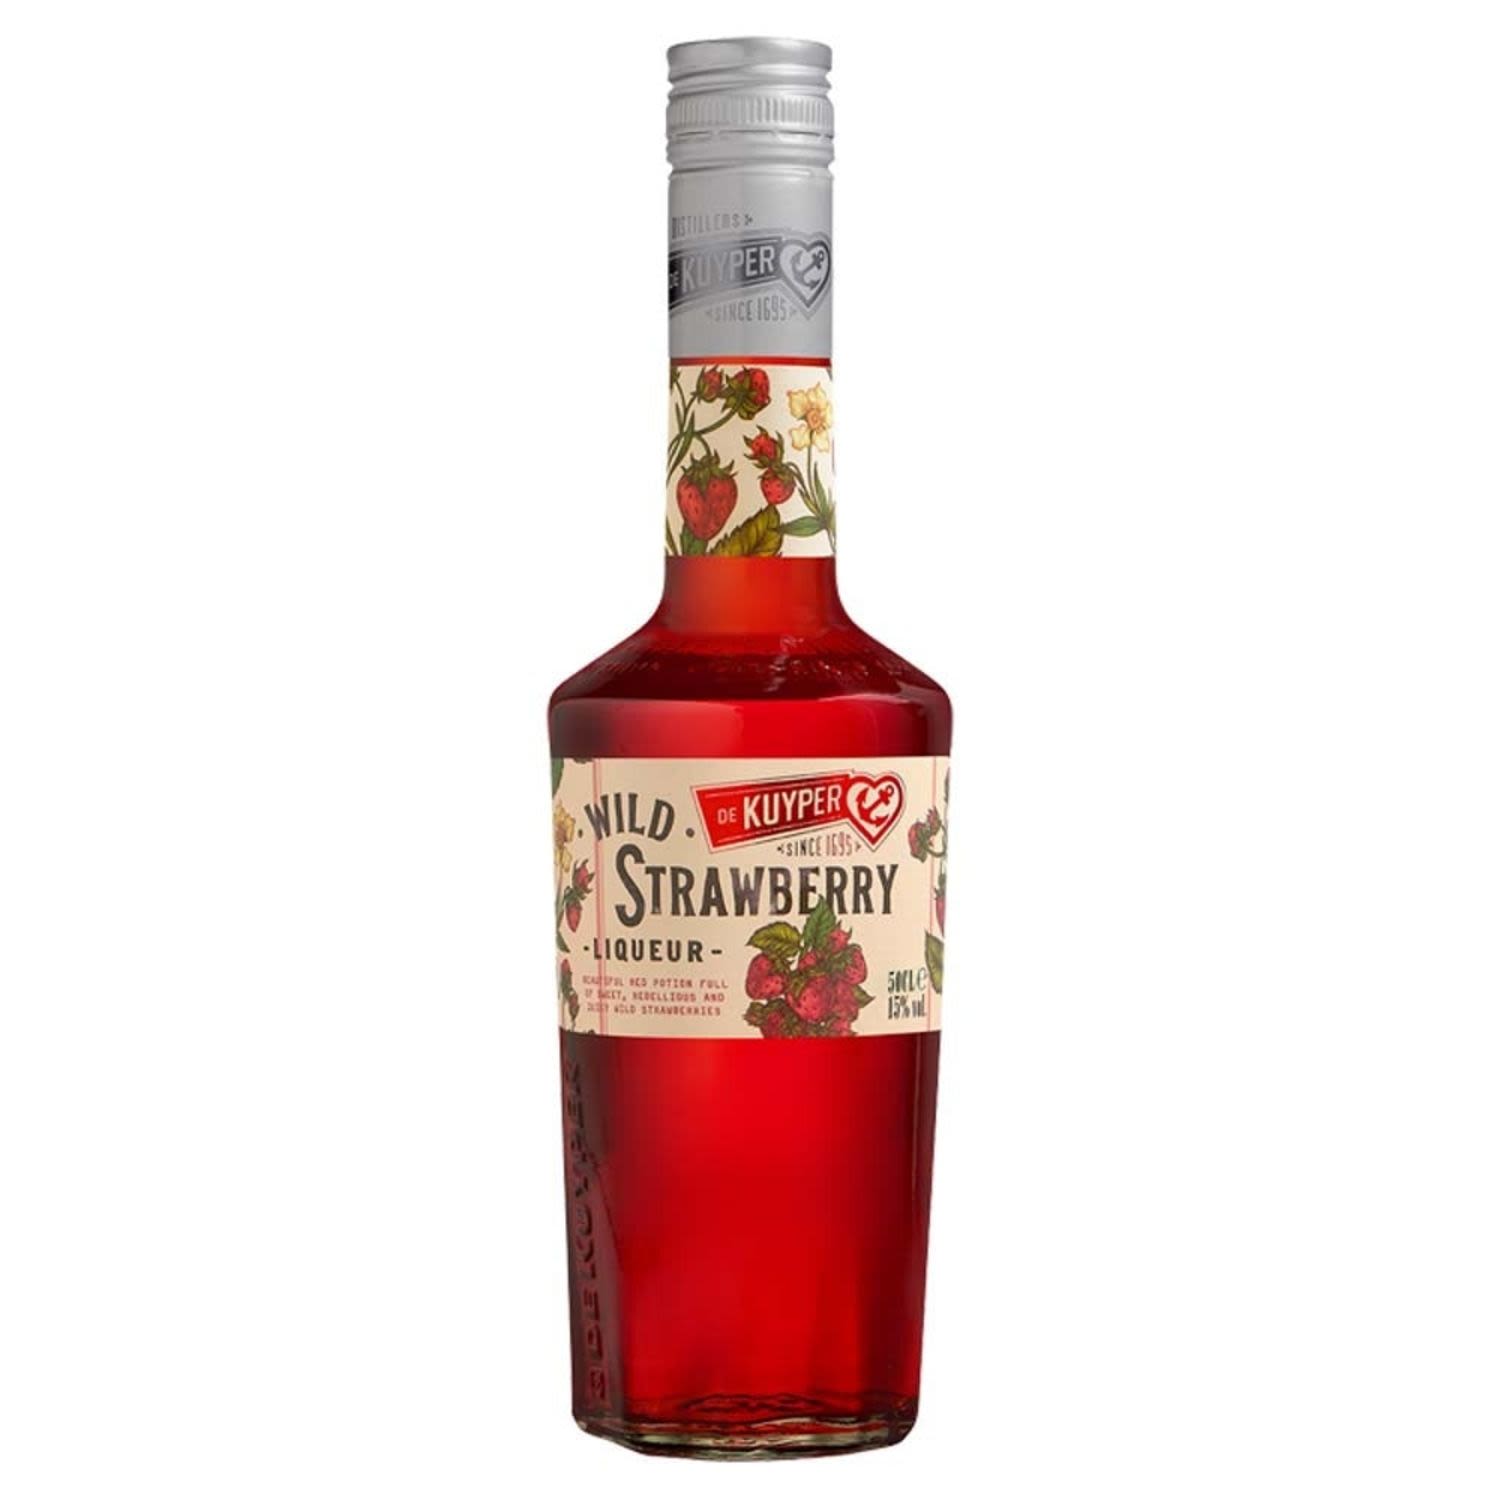 De Kuyper Wild S/Berry 500mL<br /> <br />Alcohol Volume: 15.00%<br /><br />Pack Format: Bottle<br /><br />Standard Drinks: 7.5</br /><br />Pack Type: Bottle<br /><br />Country of Origin: Netherlands<br />